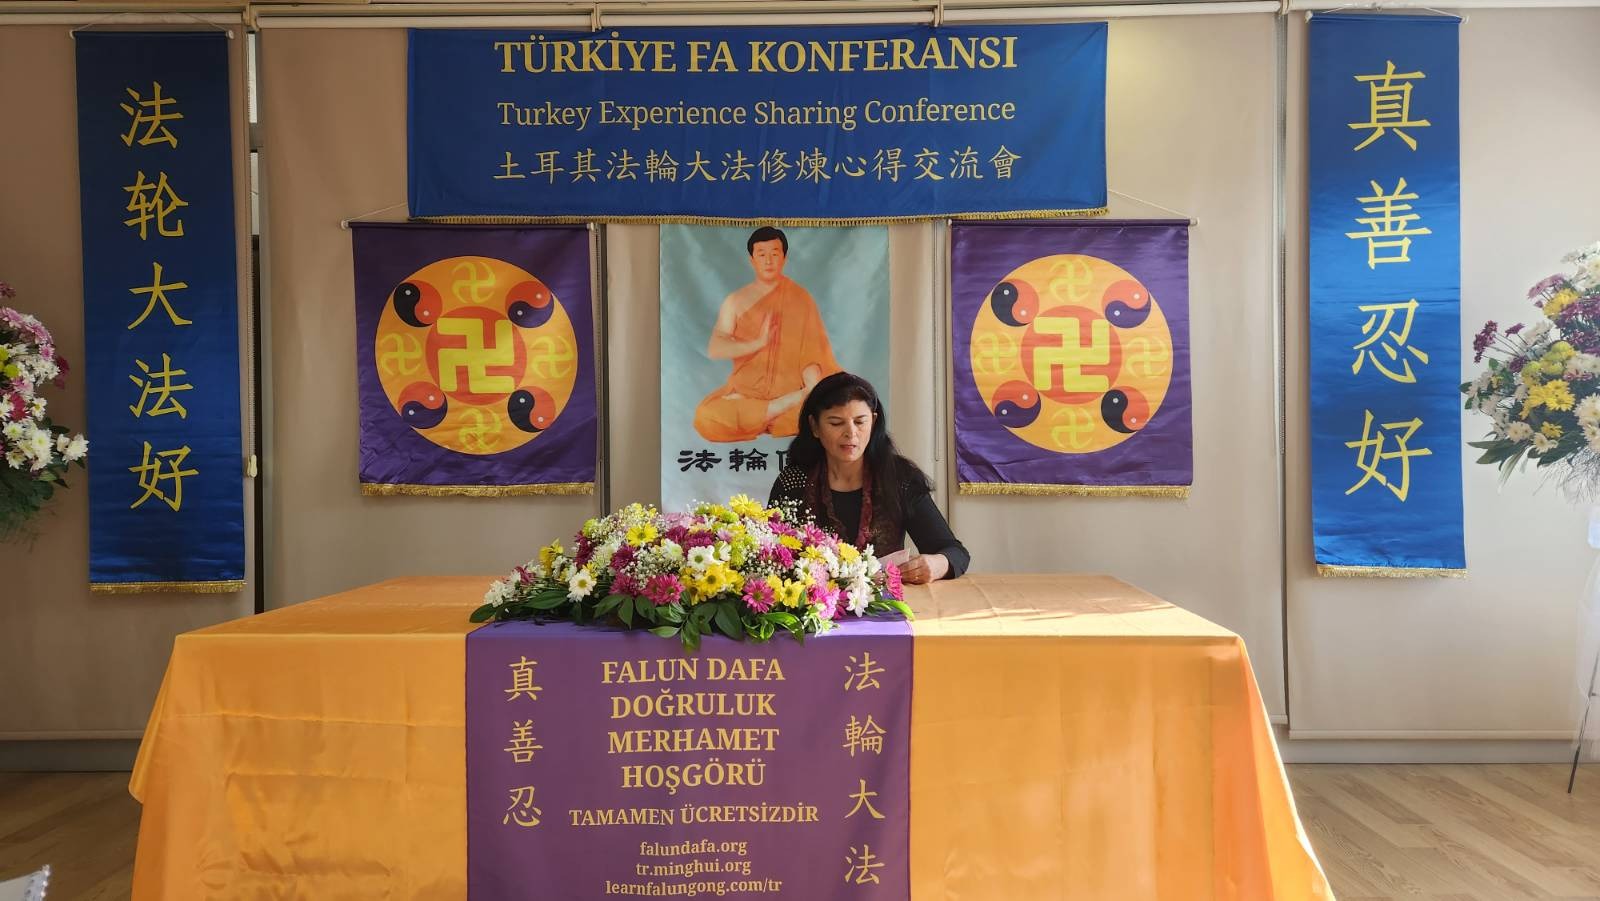 Image for article Türkiye: Falun Dafa Uygulayıcıları Uygulama Deneyimlerini Paylaşmak İçin Ankara'da Konferans Düzenledi